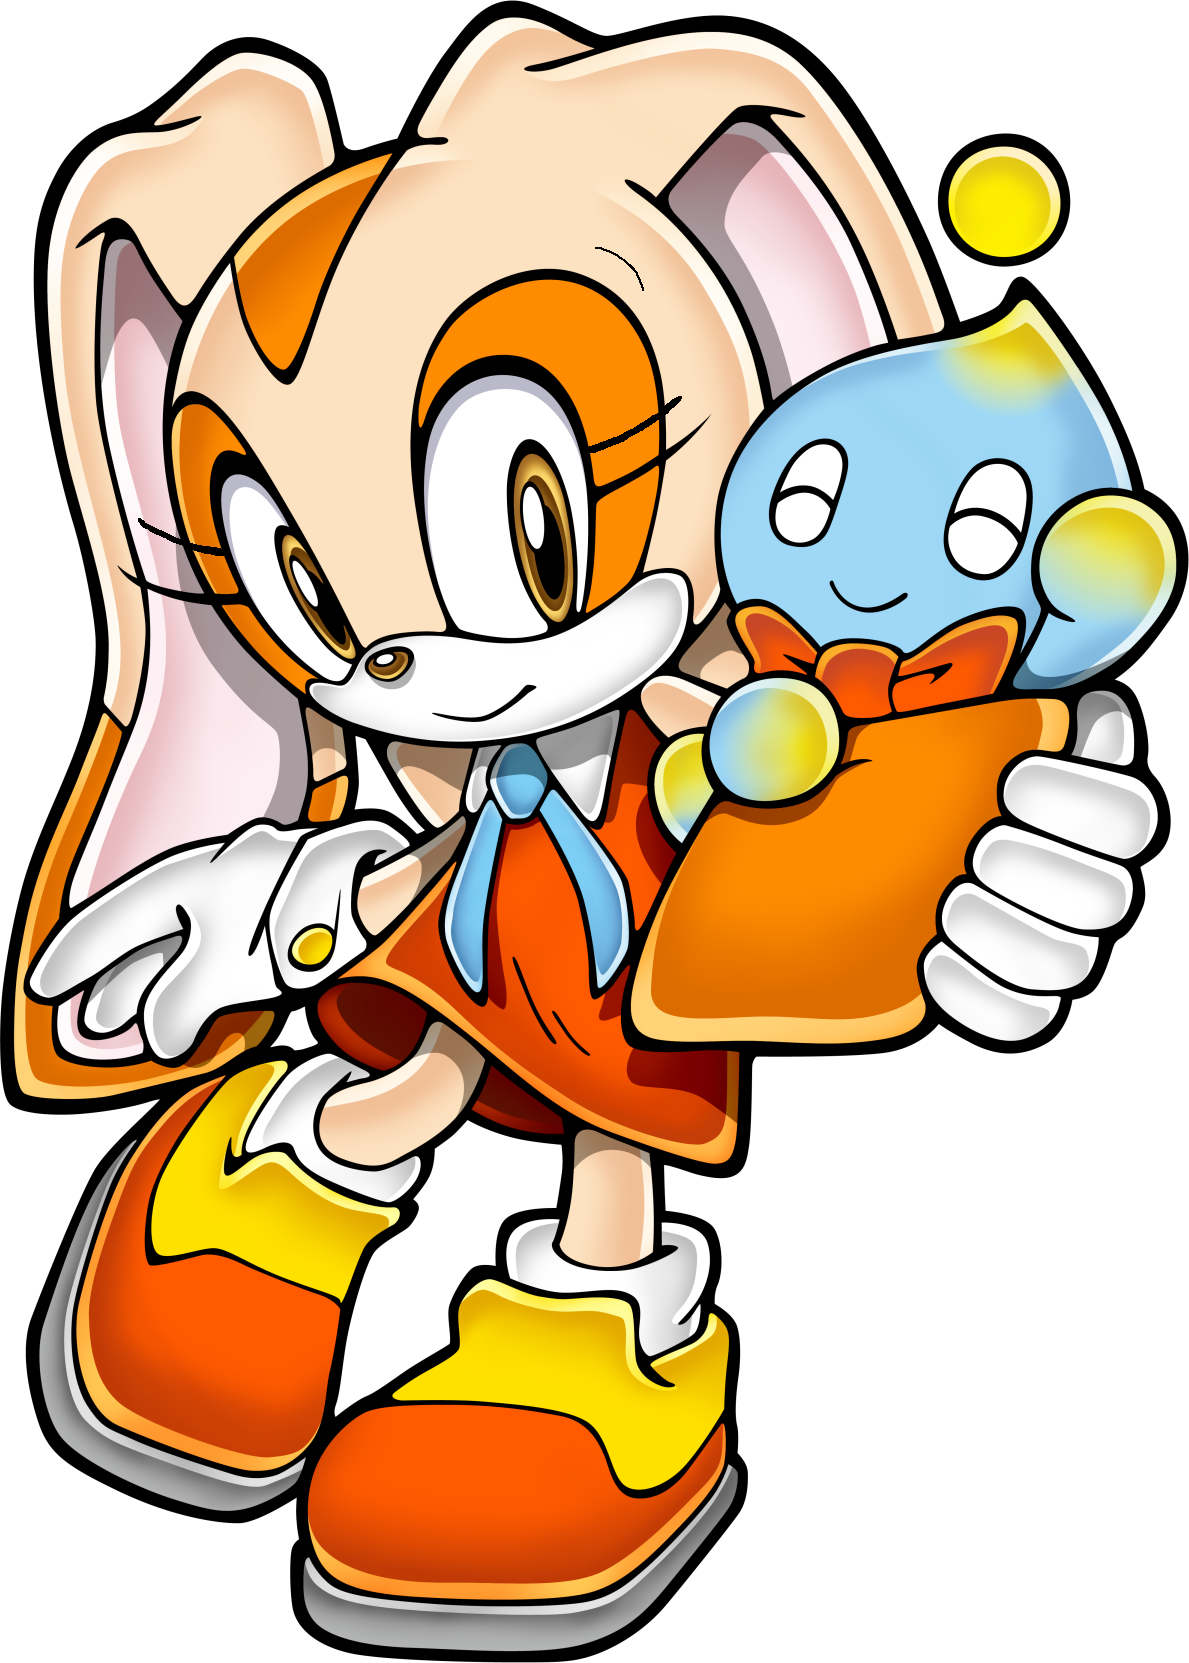 クリーム ザ ラビット List Of Sonic The Hedgehog Video Game Characters Cream The Rabbit Japaneseclass Jp